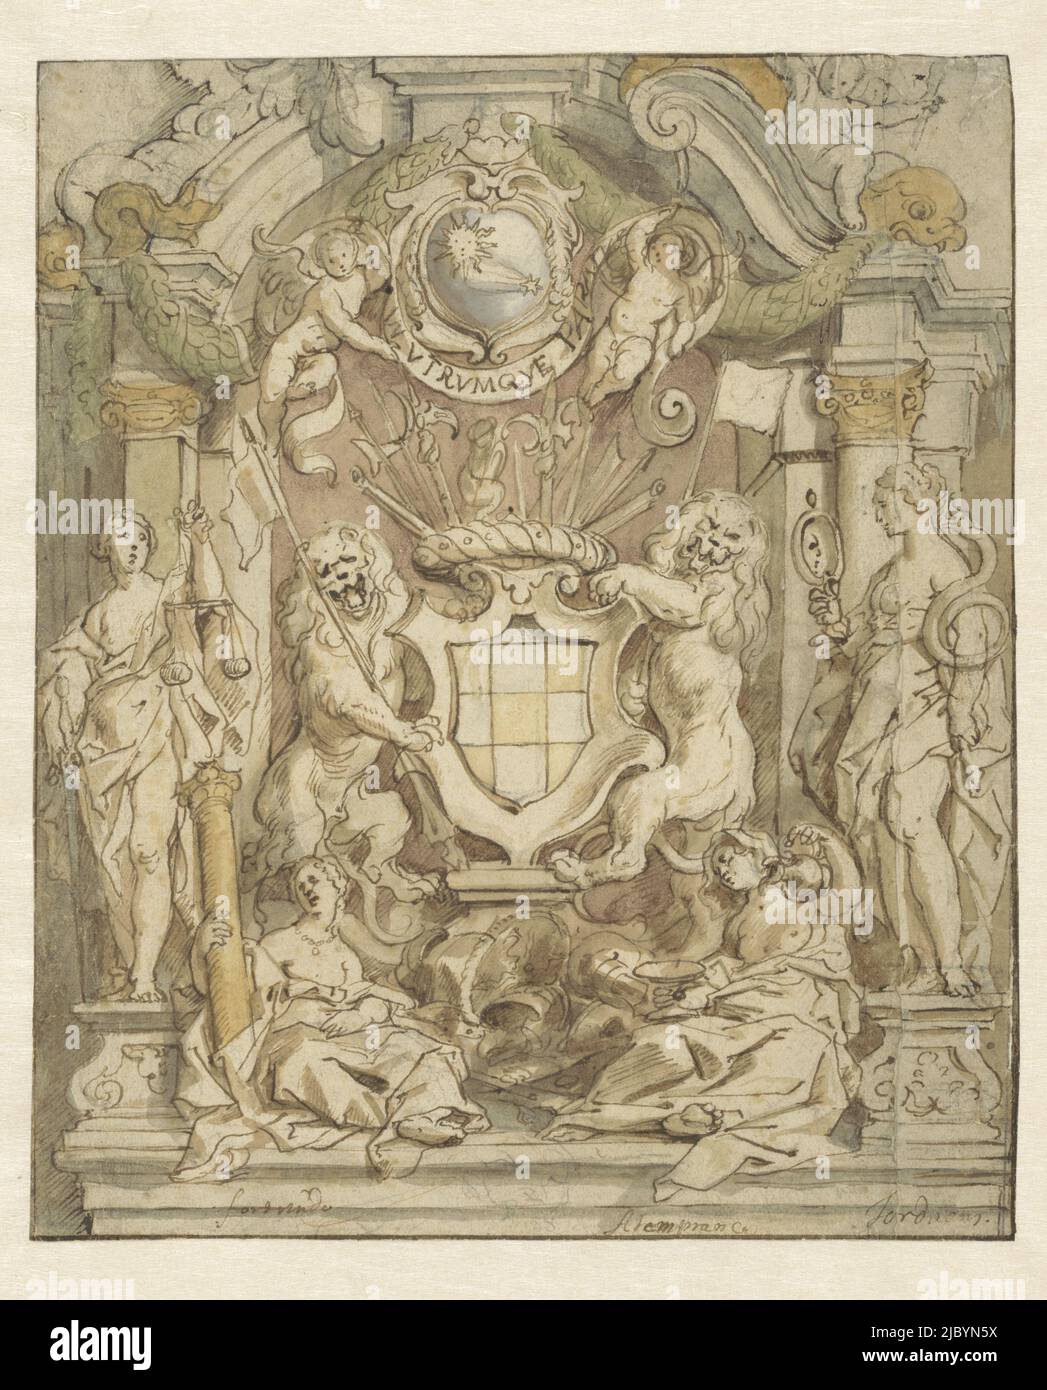 Lo stemma di Van der Linden, Jacques Jordaens, 1630 - 1635, modello con uno stemma e figure allegoriche., disegnatore: Jacob Jordaens (i), (menzionato sull'oggetto), 1630 - 1635, carta, penna, spazzola, a 297 mm x l 248 mm Foto Stock